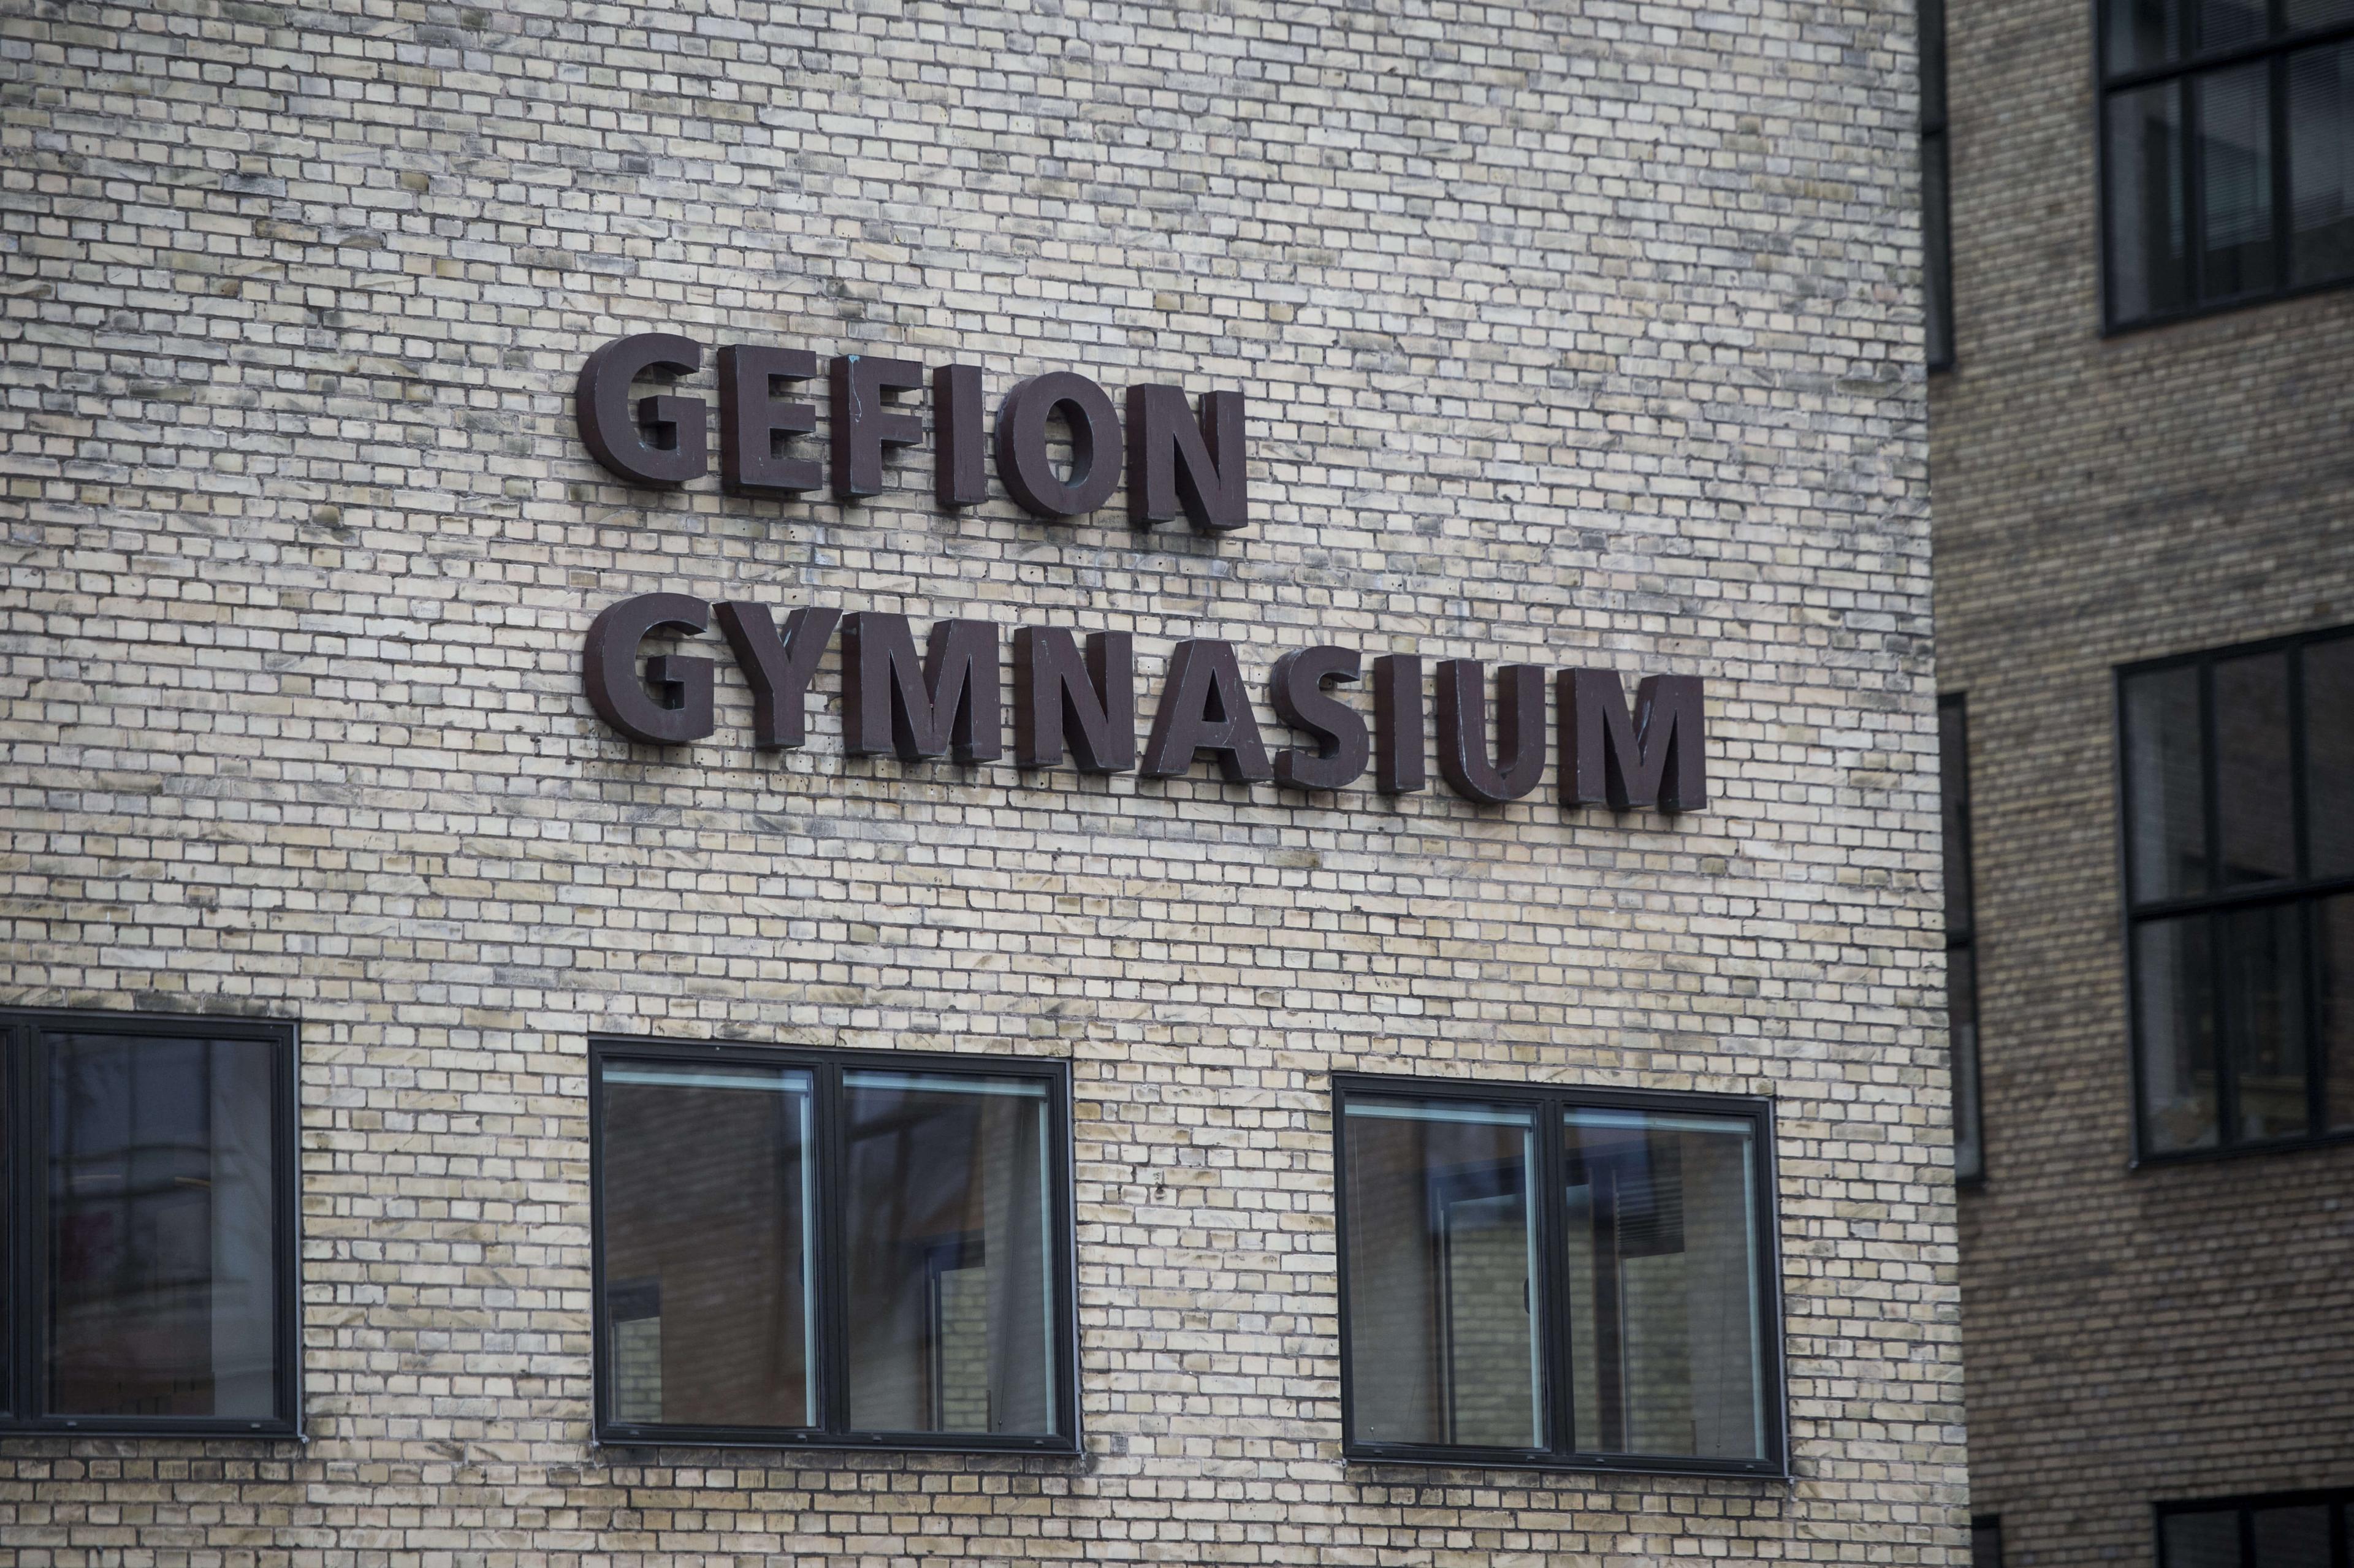 Gefion Gymnasium i København er en af de skoler, der blev lukket i ugen uden nogen coronatilfælde. Årsagen er en automatisk model for nedlukninger, som træder i kraft, hvis smitten i et sogn rammer over nogle grænseværdier. 